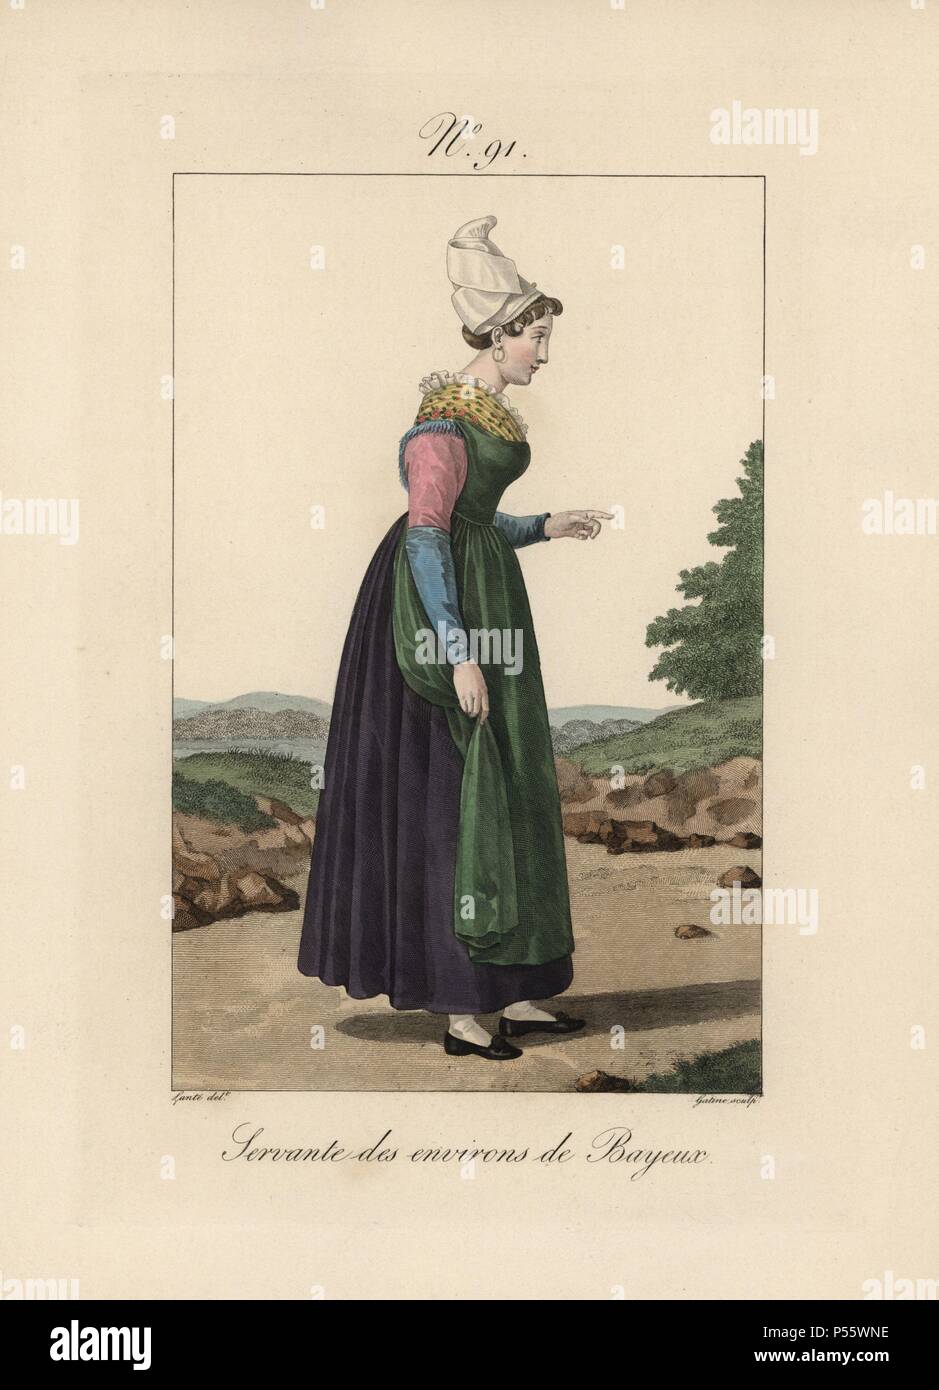 Von der Bayeux Bereich Diener. Der Träger haben schöne Funktionen recht Mit dieser Kopfbedeckung zu suchen. Handcolorierte mode Platte Illustration von LANTE von Gatine von louis-marie's Lante' Kostüme des Gravierten femmes du Pays de Caux", 1827/1885. Mit ihren hohen Elsässischen spitze Hüte, die Frauen von Caux und der Normandie waren berühmt für die Eleganz und Stil. Stockfoto